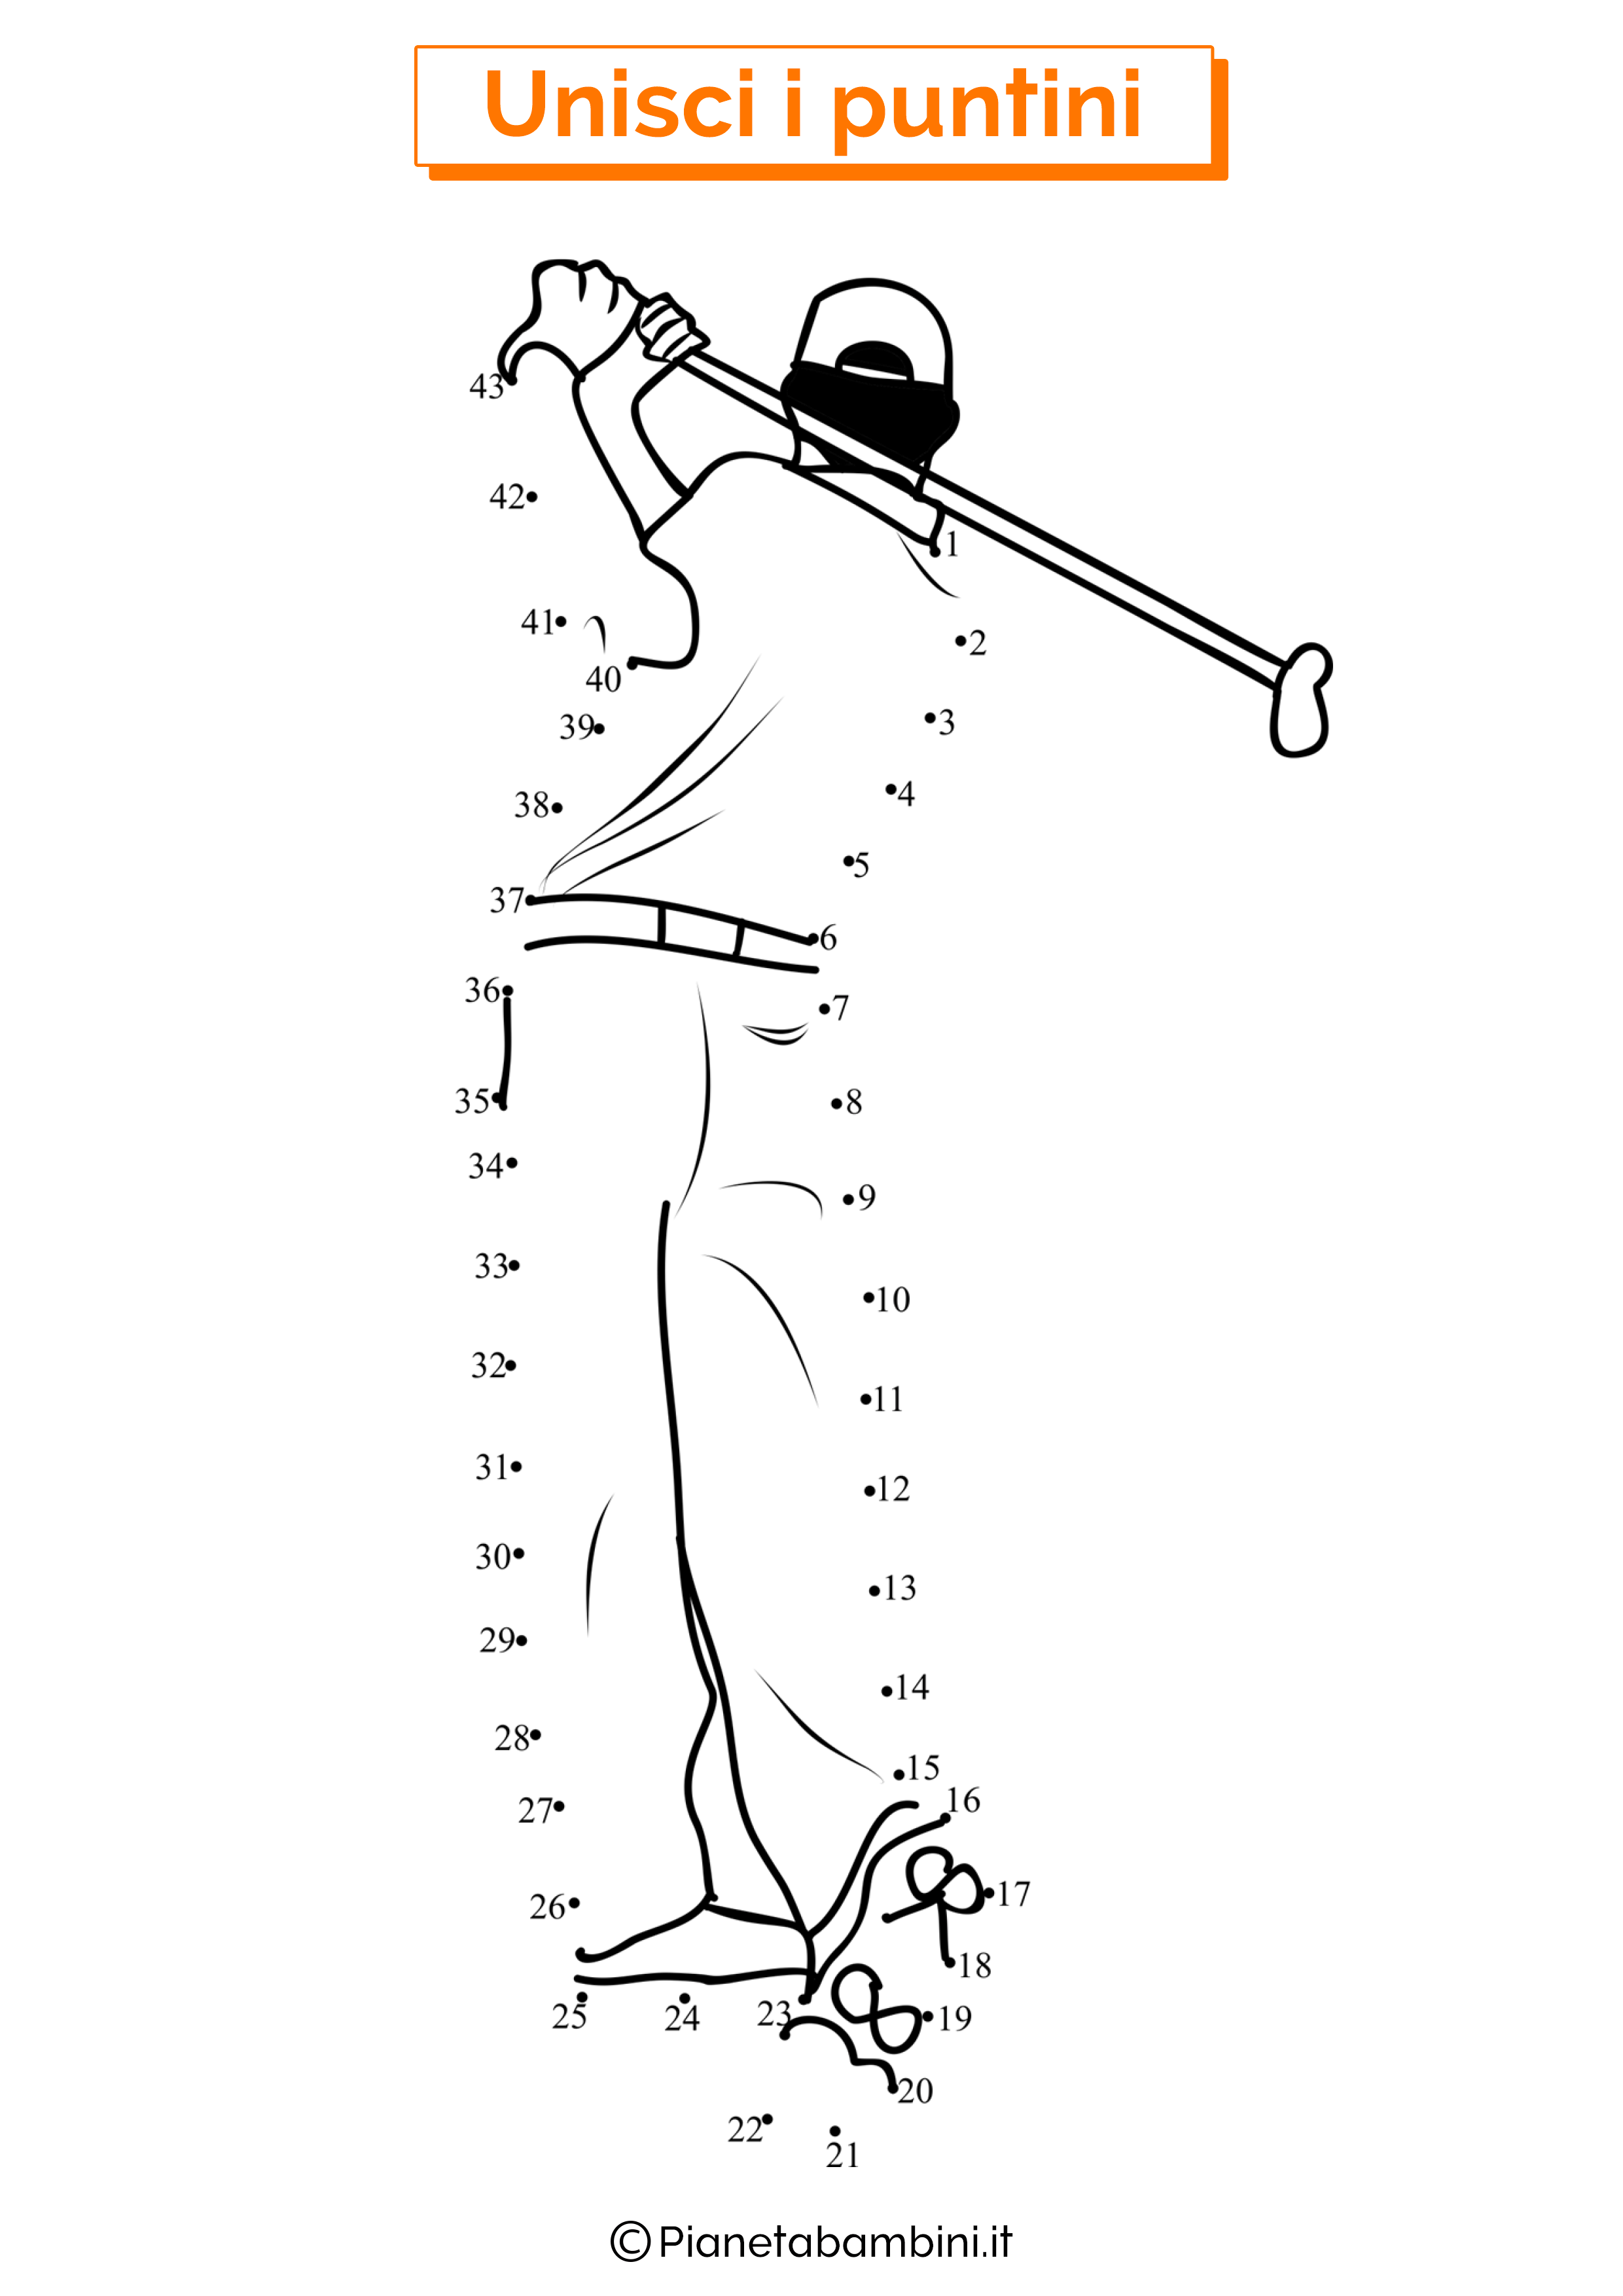 Disegno unisci i puntini golf